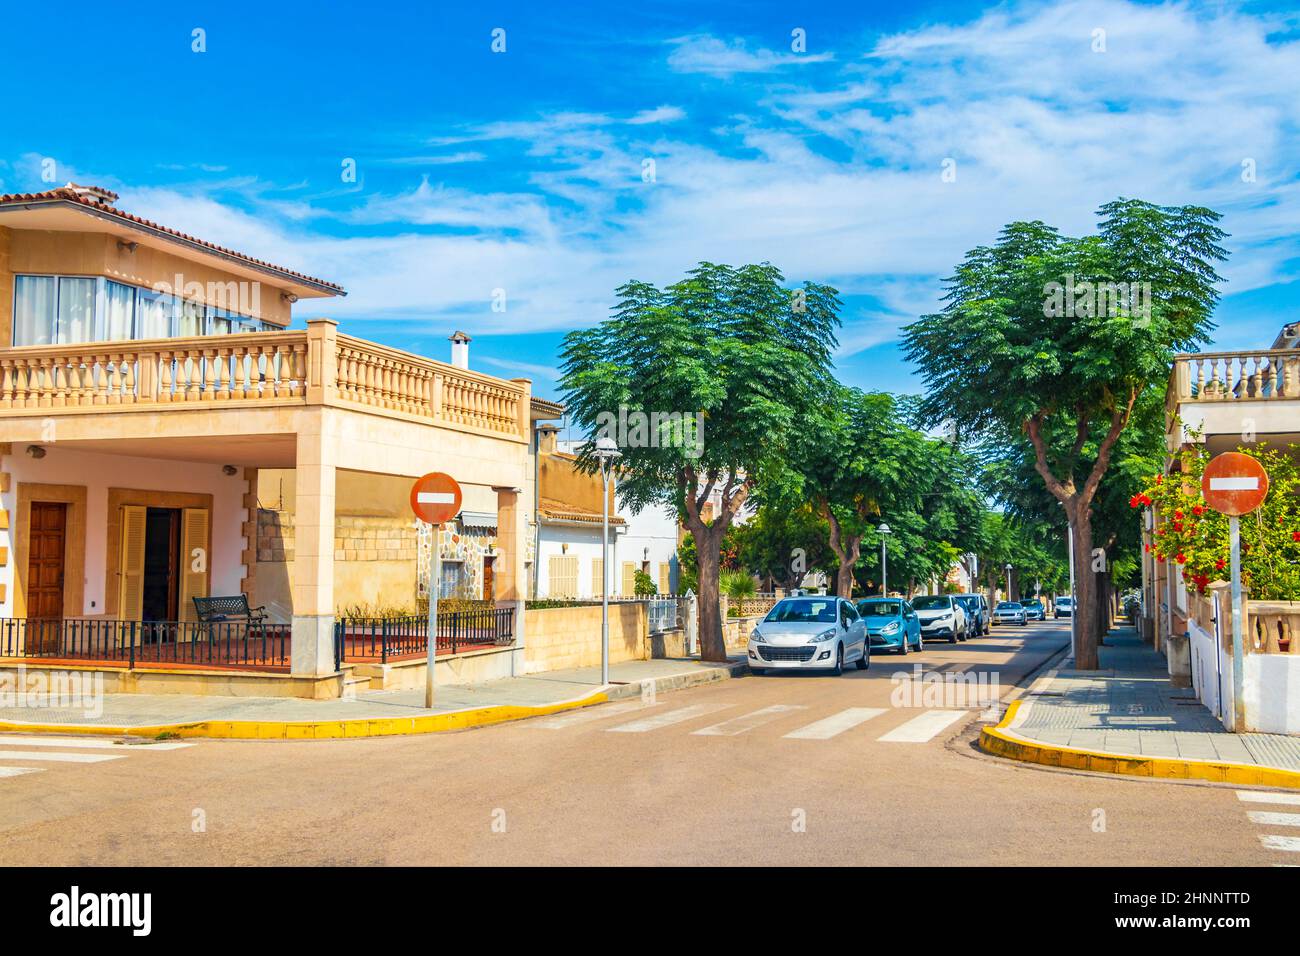 Typische Straße Autos Palmen Gebäude können Picafort auf Spanien. Stockfoto